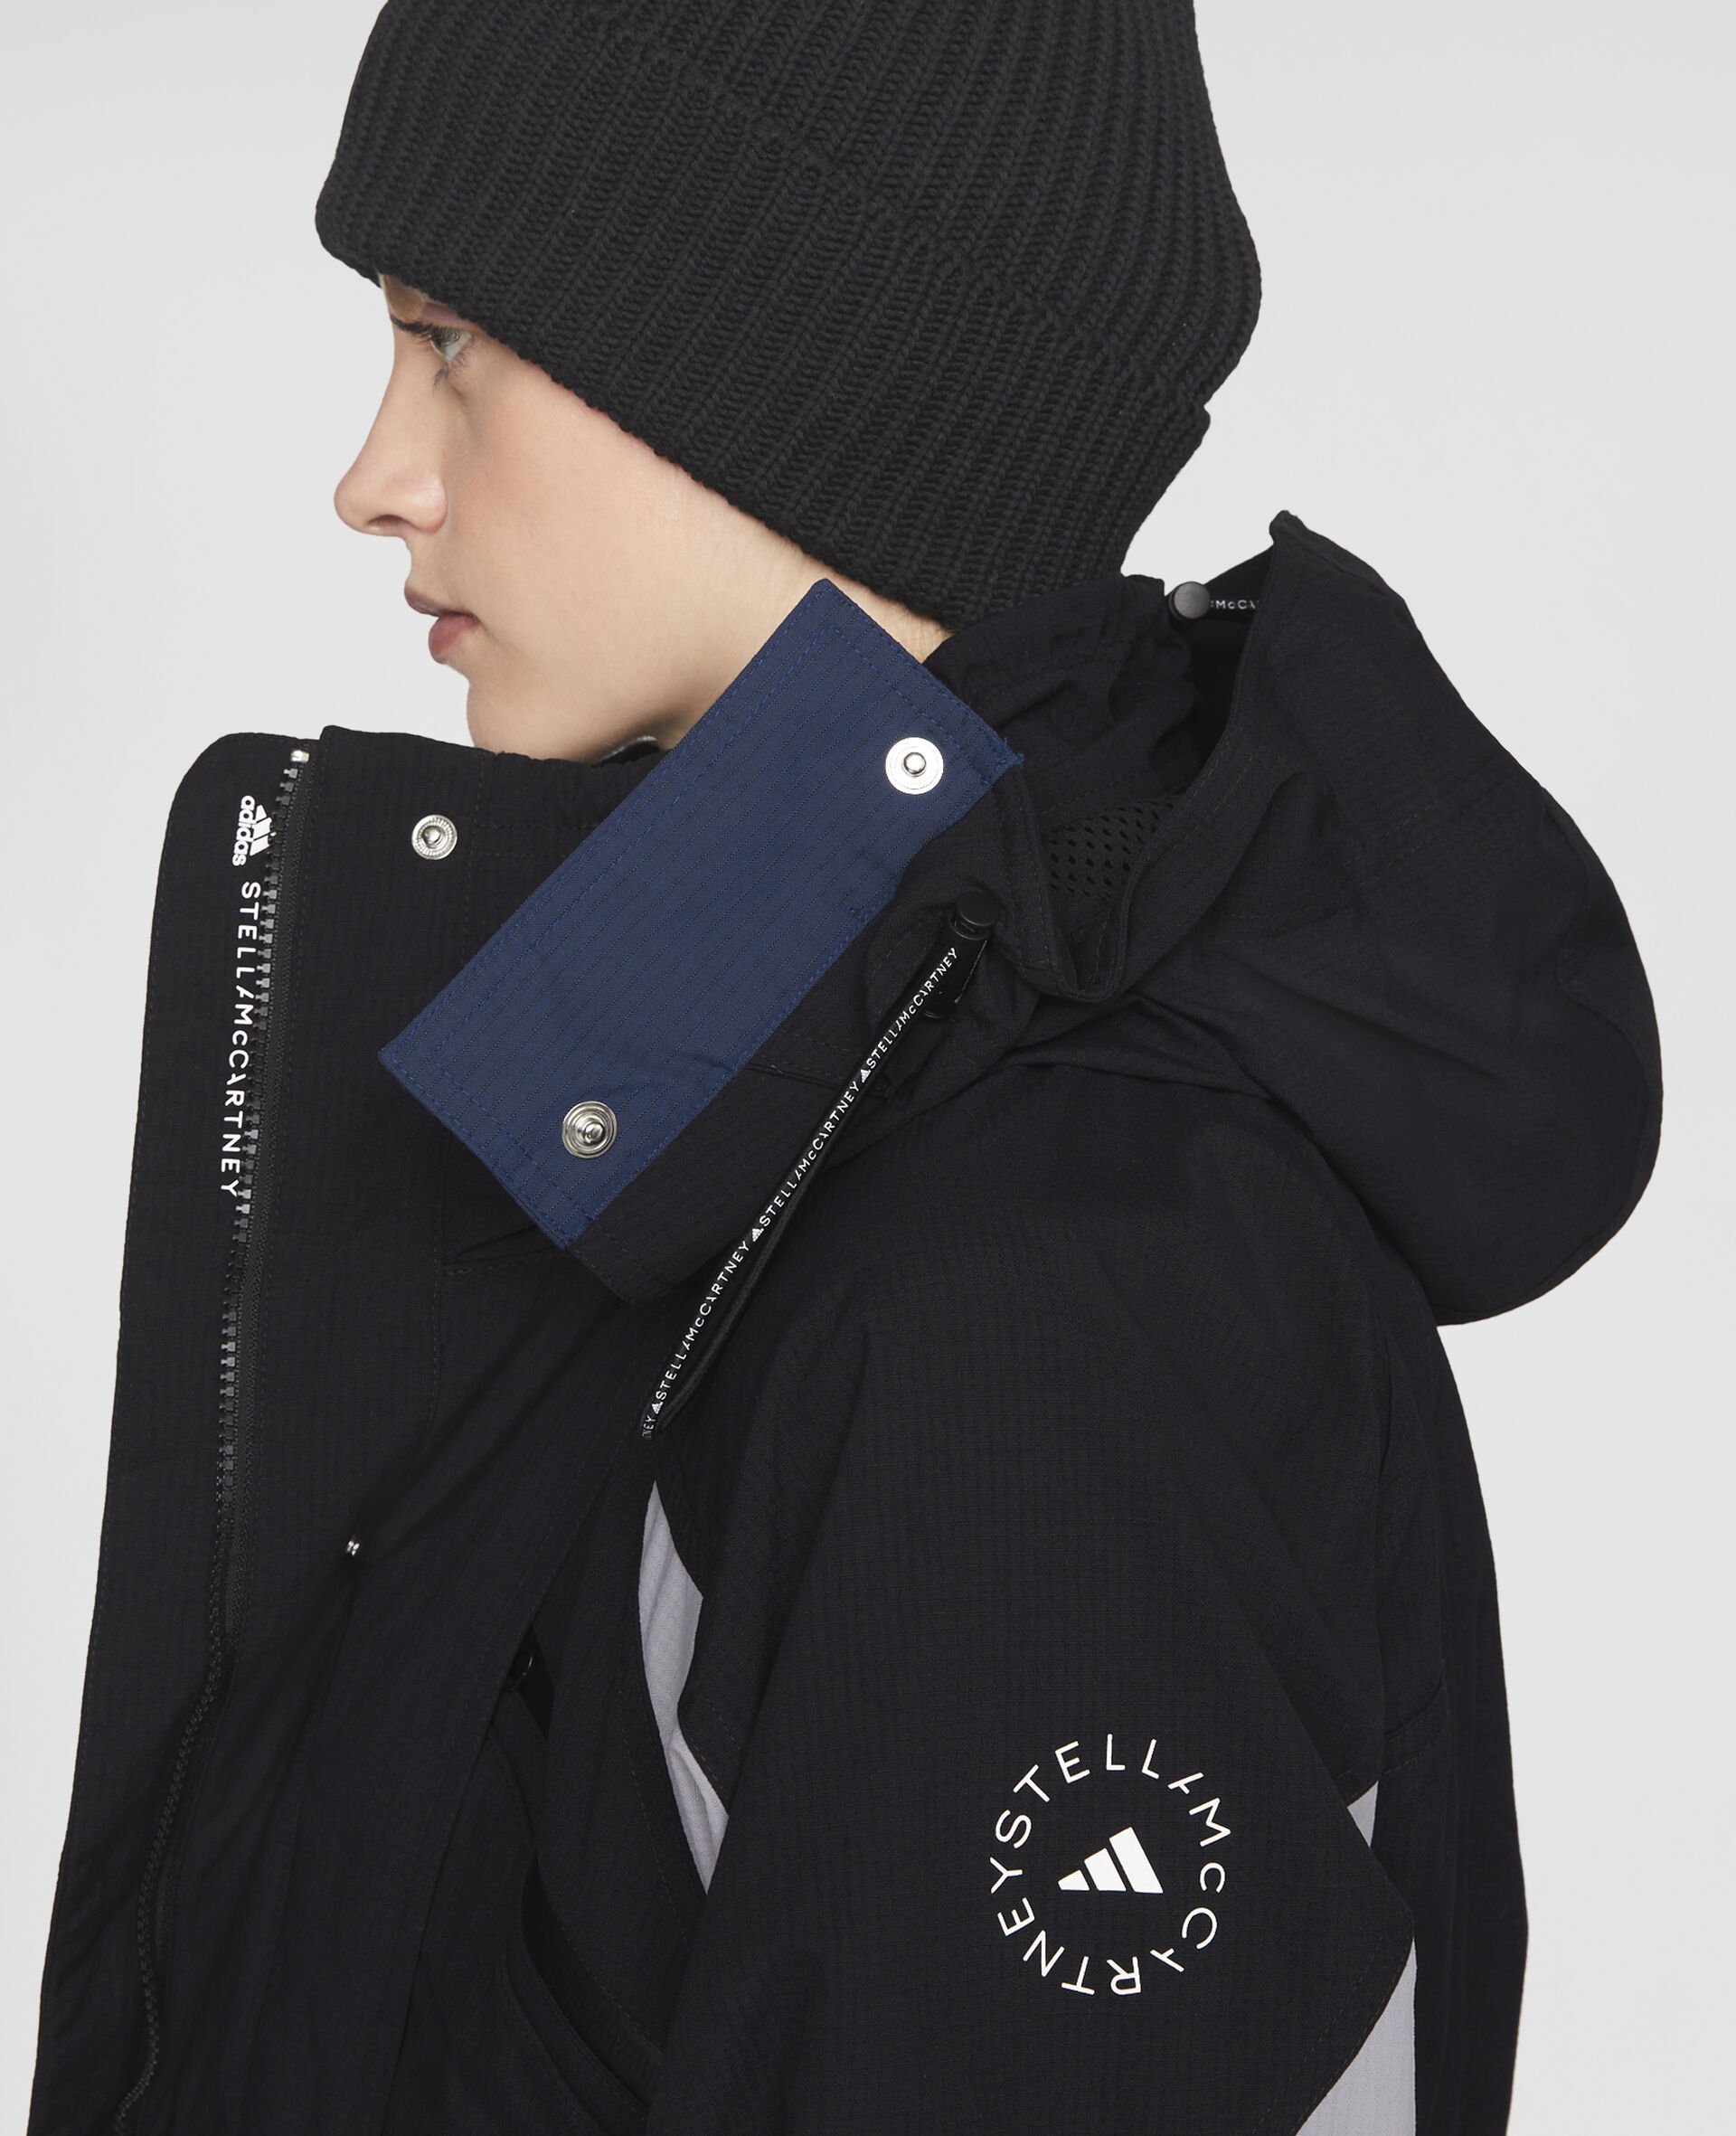 Winter Jacket-Black-large image number 3